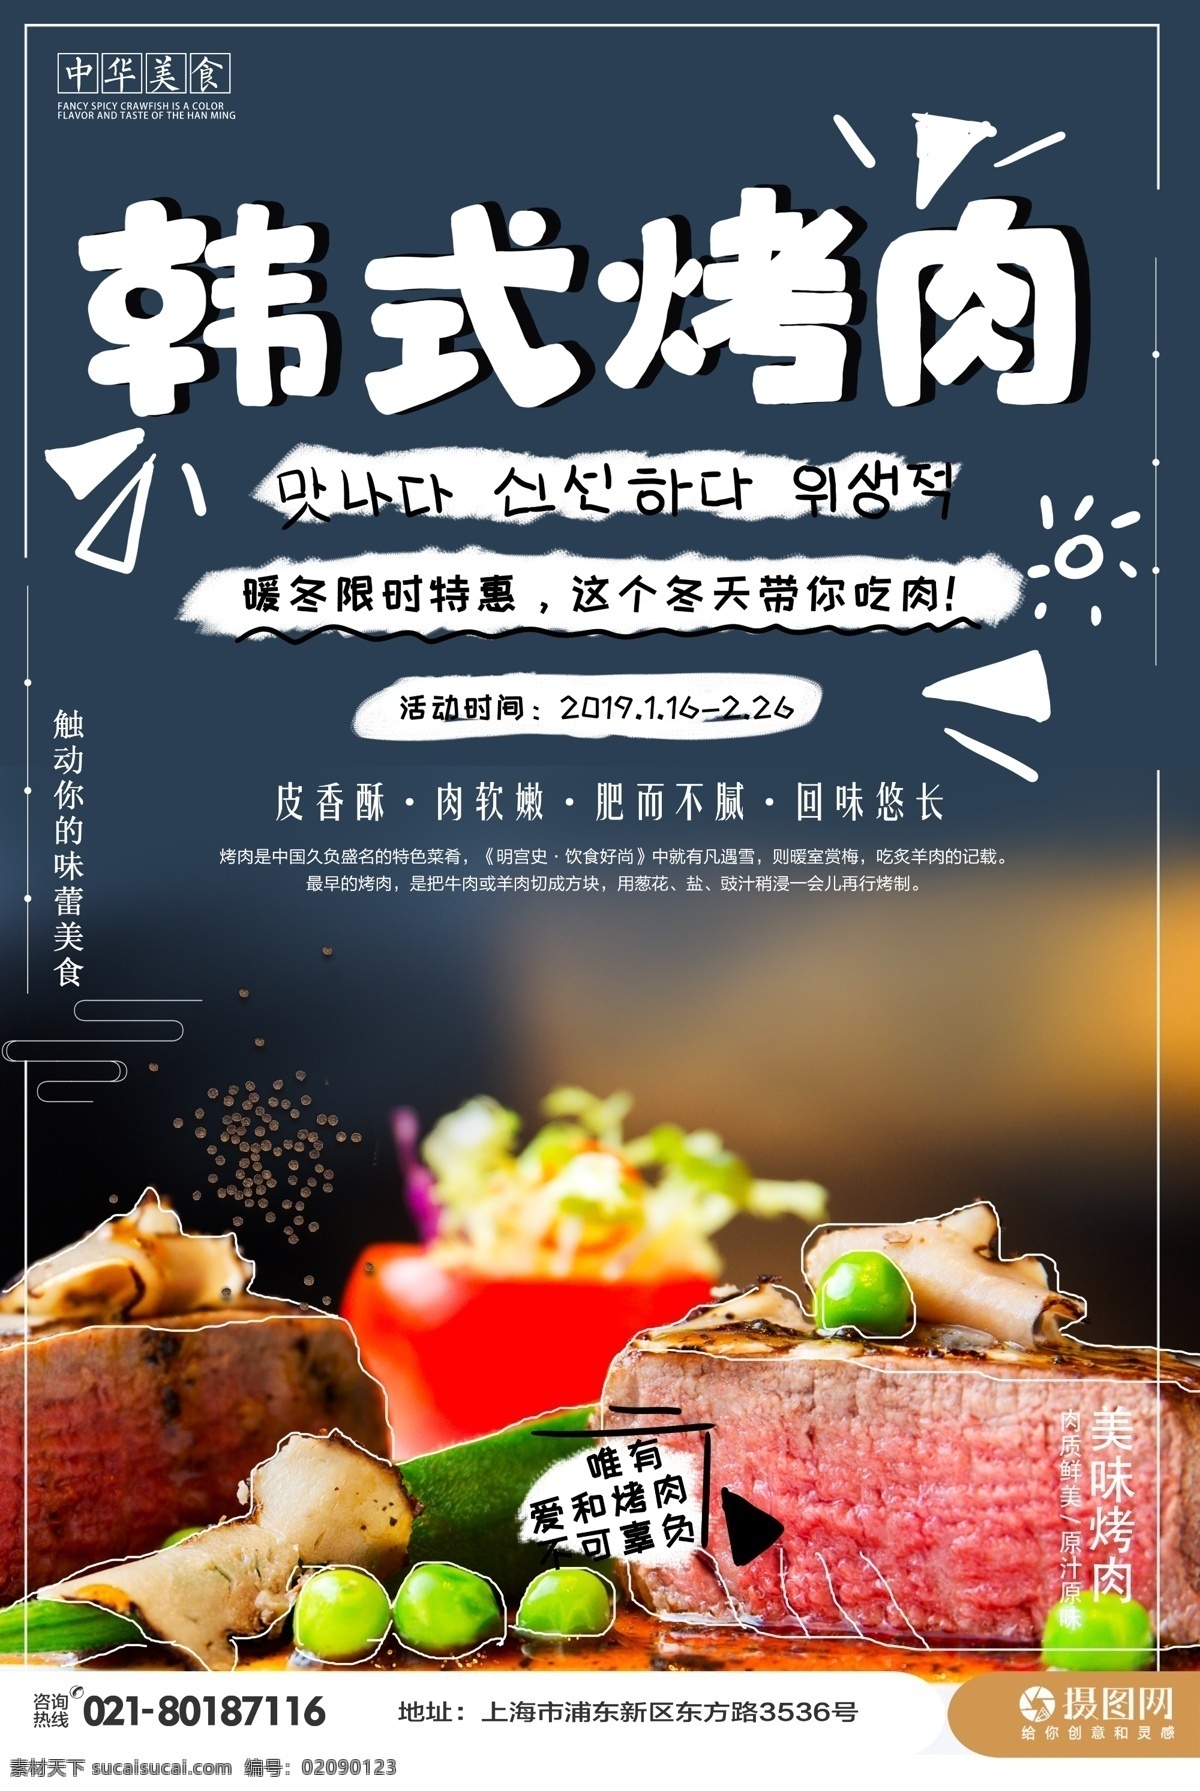 韩式烤肉海报 海报 烤牛肉 烤肉海报 烤肥牛 烧烤 烧烤海报 美食 韩国烤肉 食物餐厅 餐饮 烤肉 促销 肉 韩式烤肉